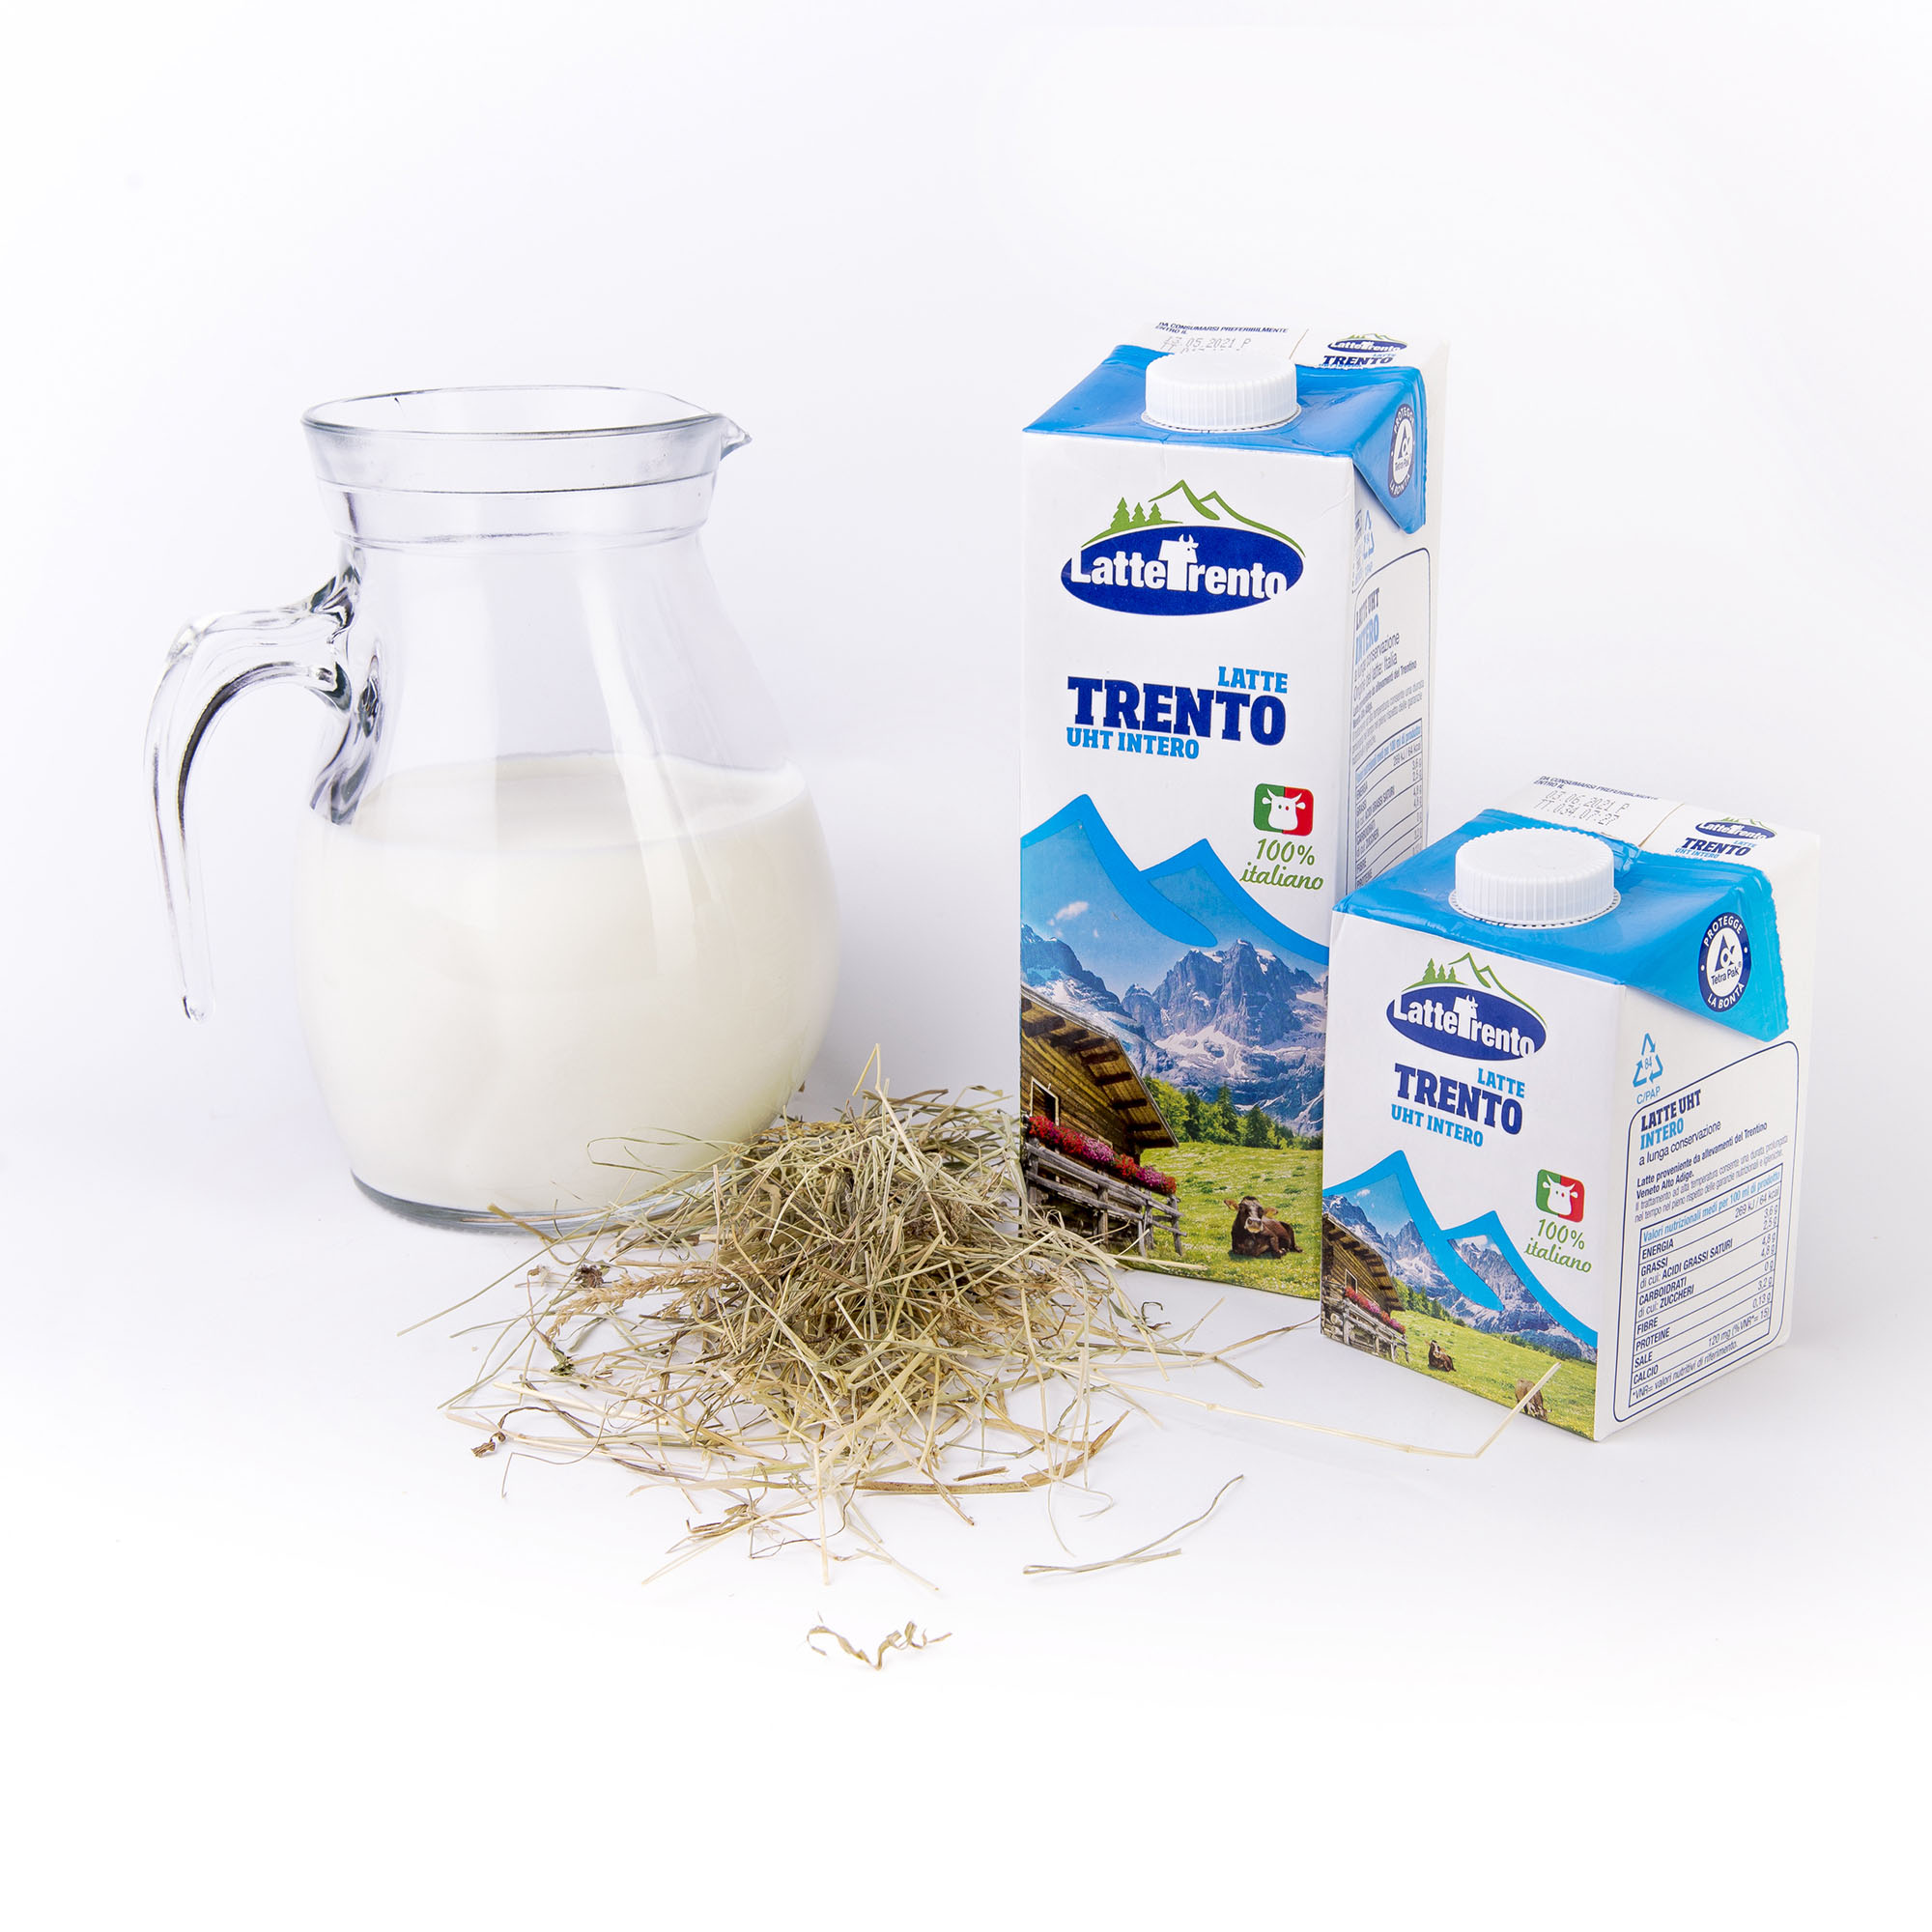 Latte Intero UHT - Lattebusche - Latte e formaggi delle Dolomiti